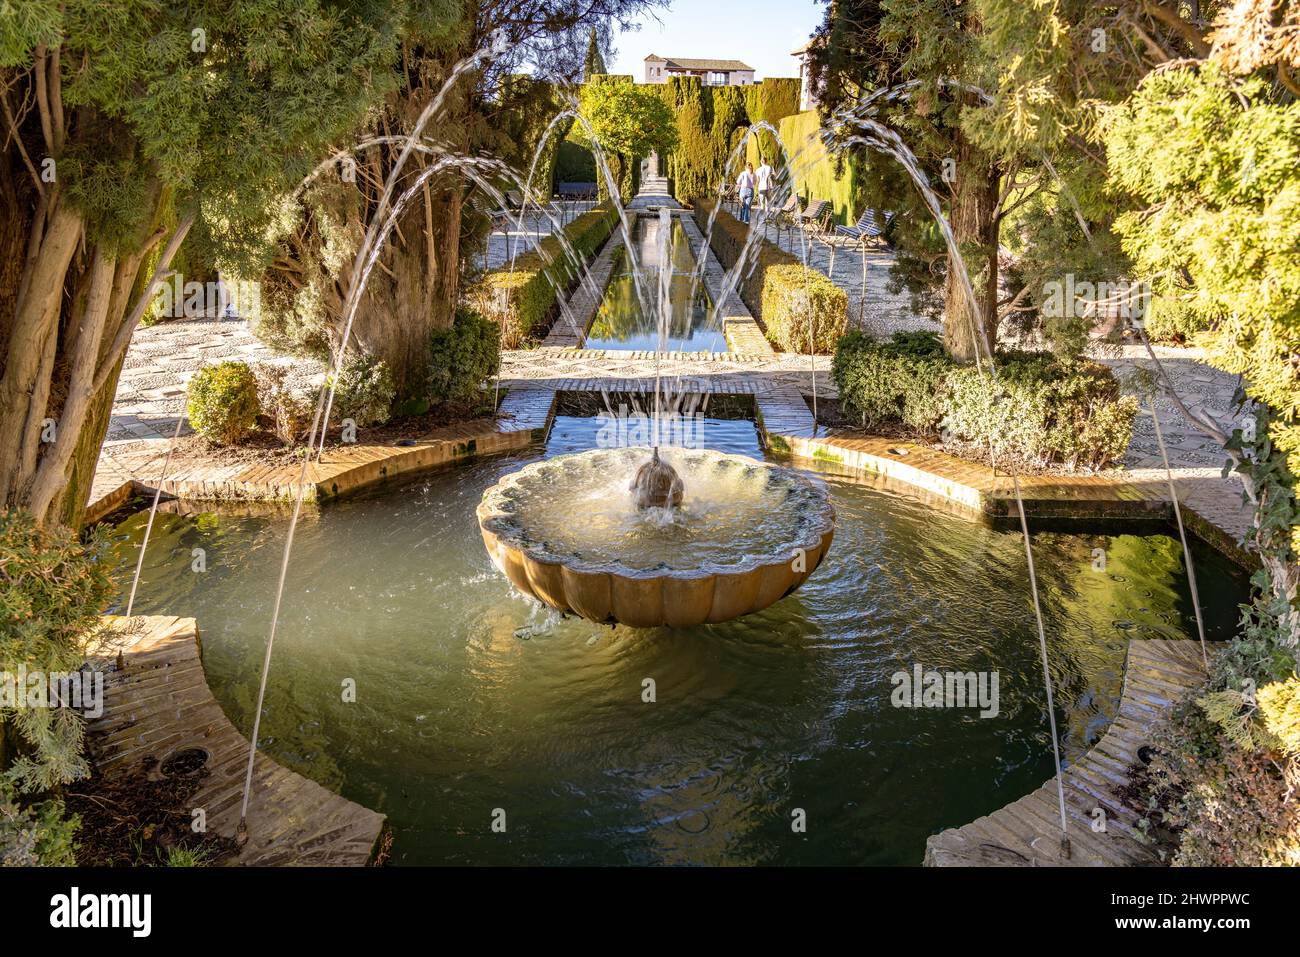 Brunnen in der Gartenanlage Generalife, Welterbe Alhambra en Granada, Andalusien, Spanien | Fuente en los jardines paisajísticos del Generalife, la más famosa del mundo Foto de stock